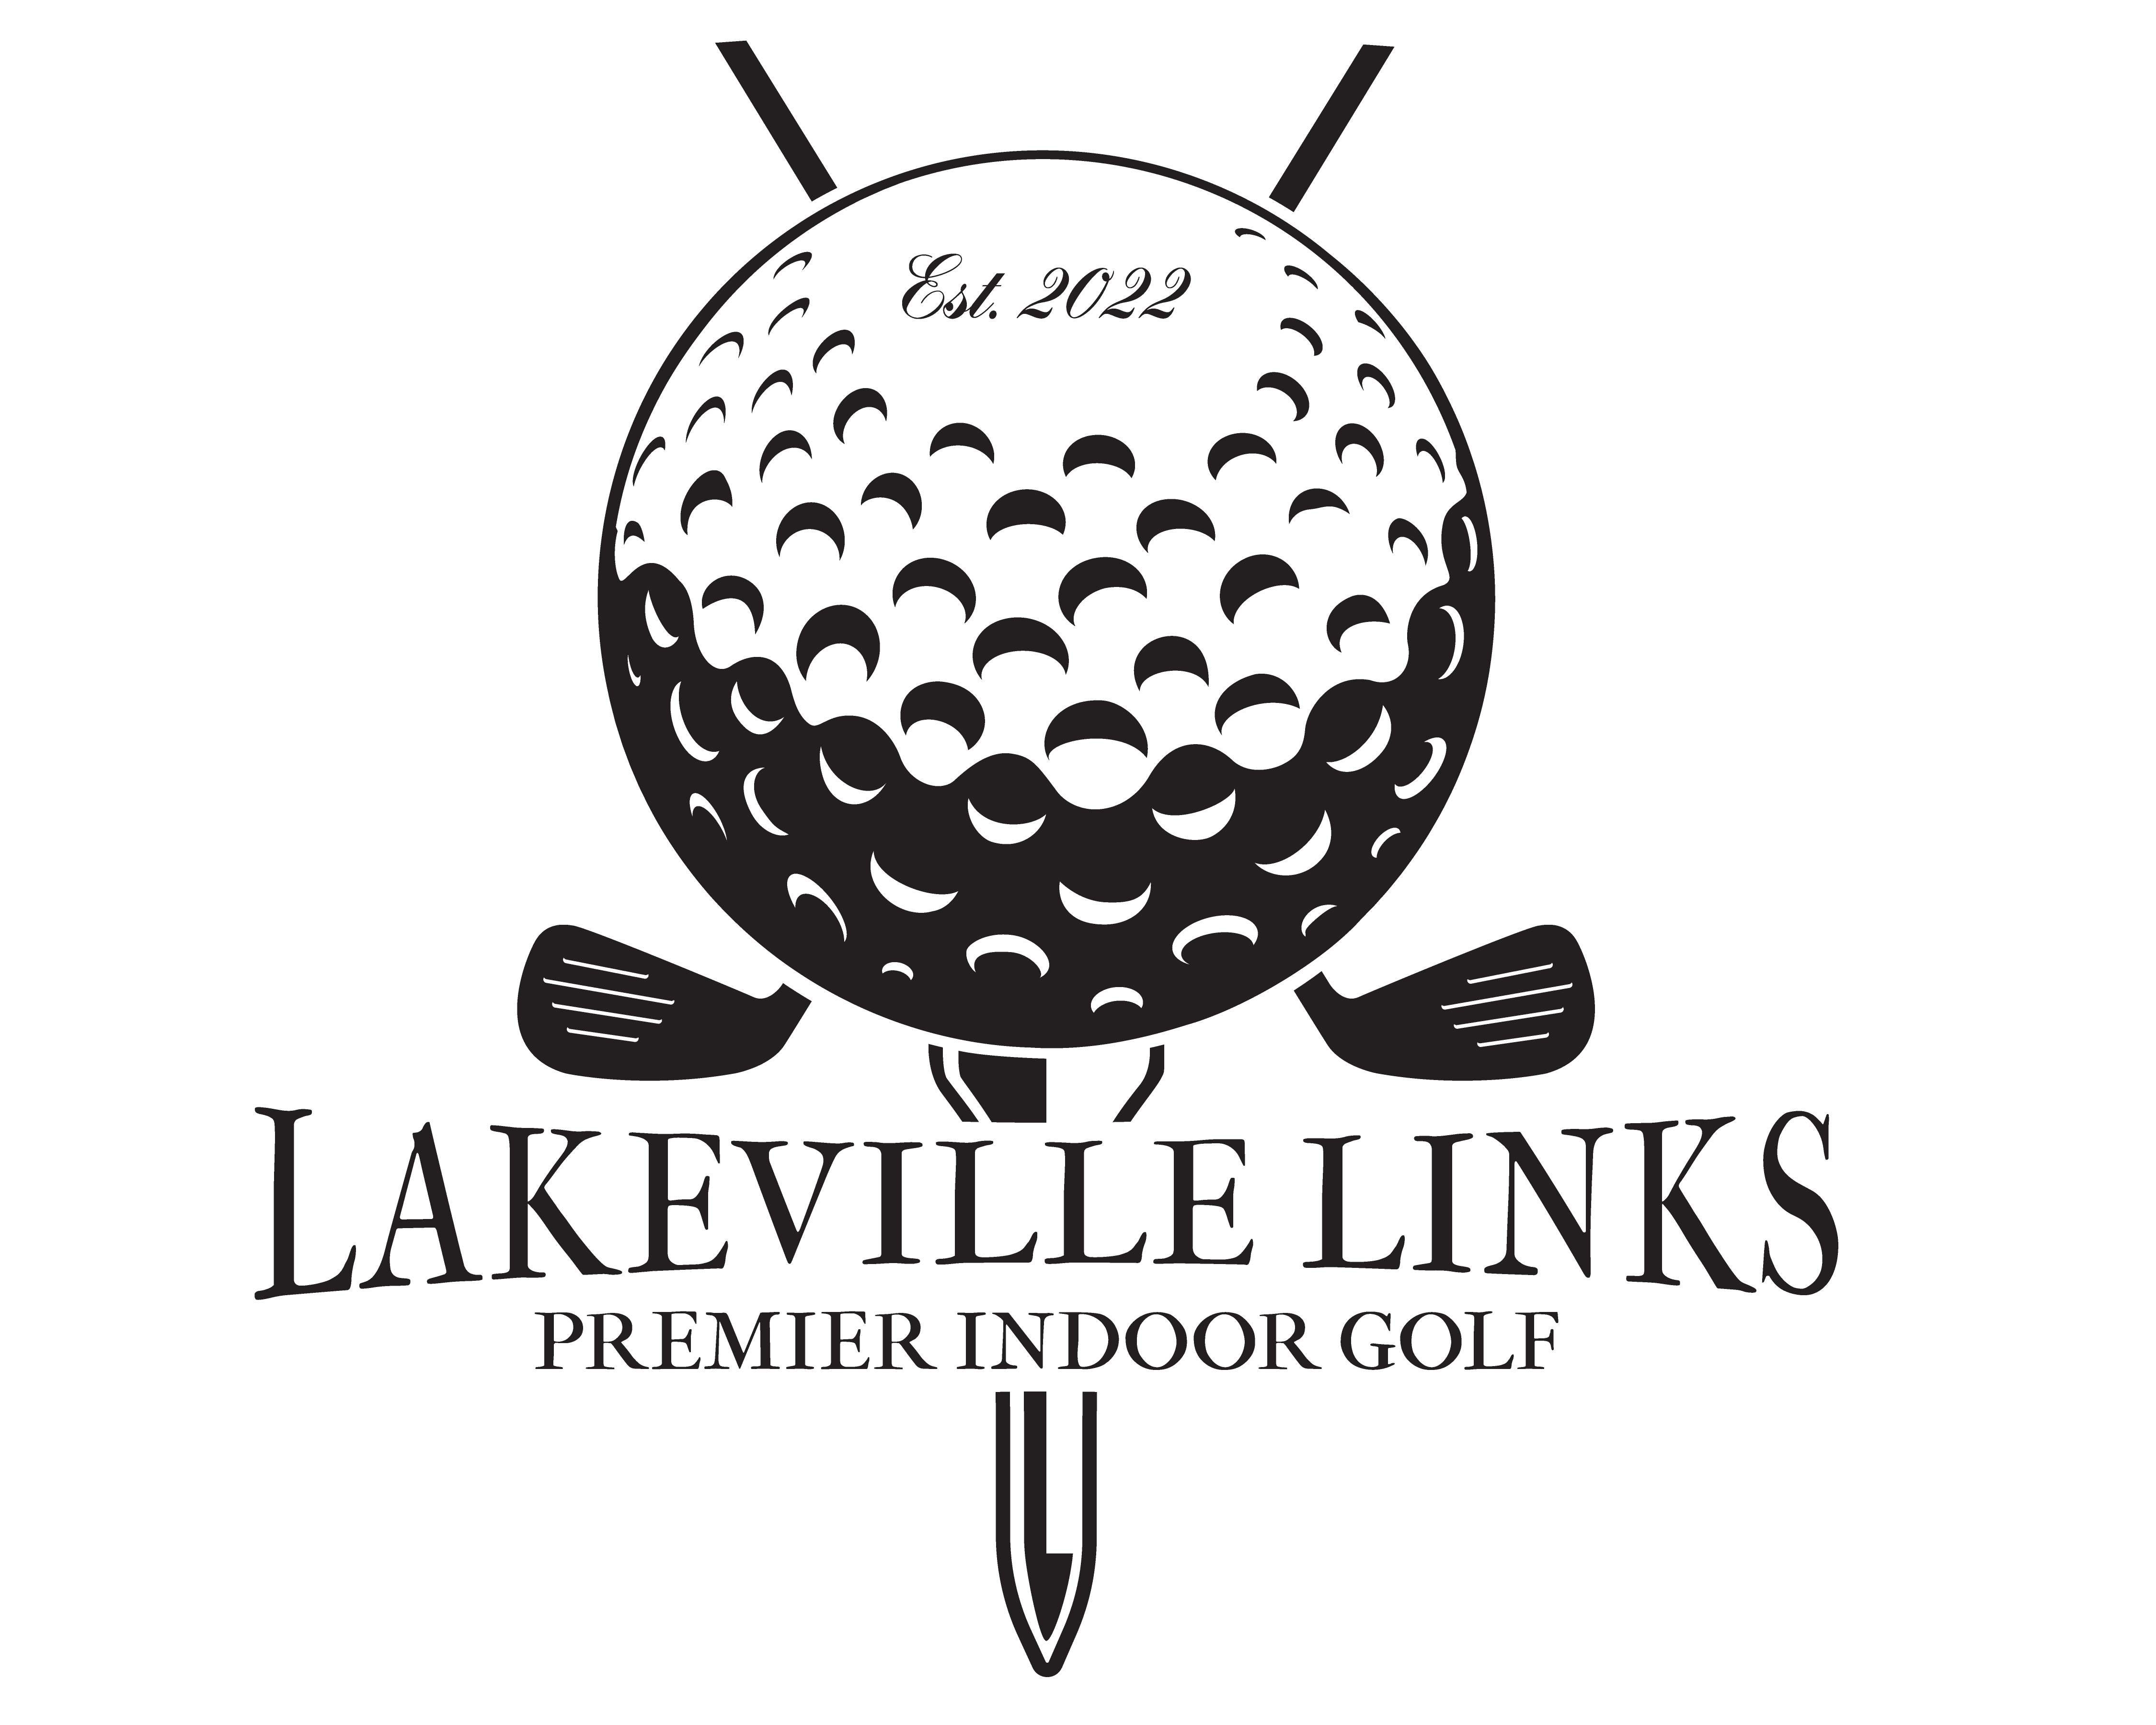 Lakeville Links Premier Indoor Golf